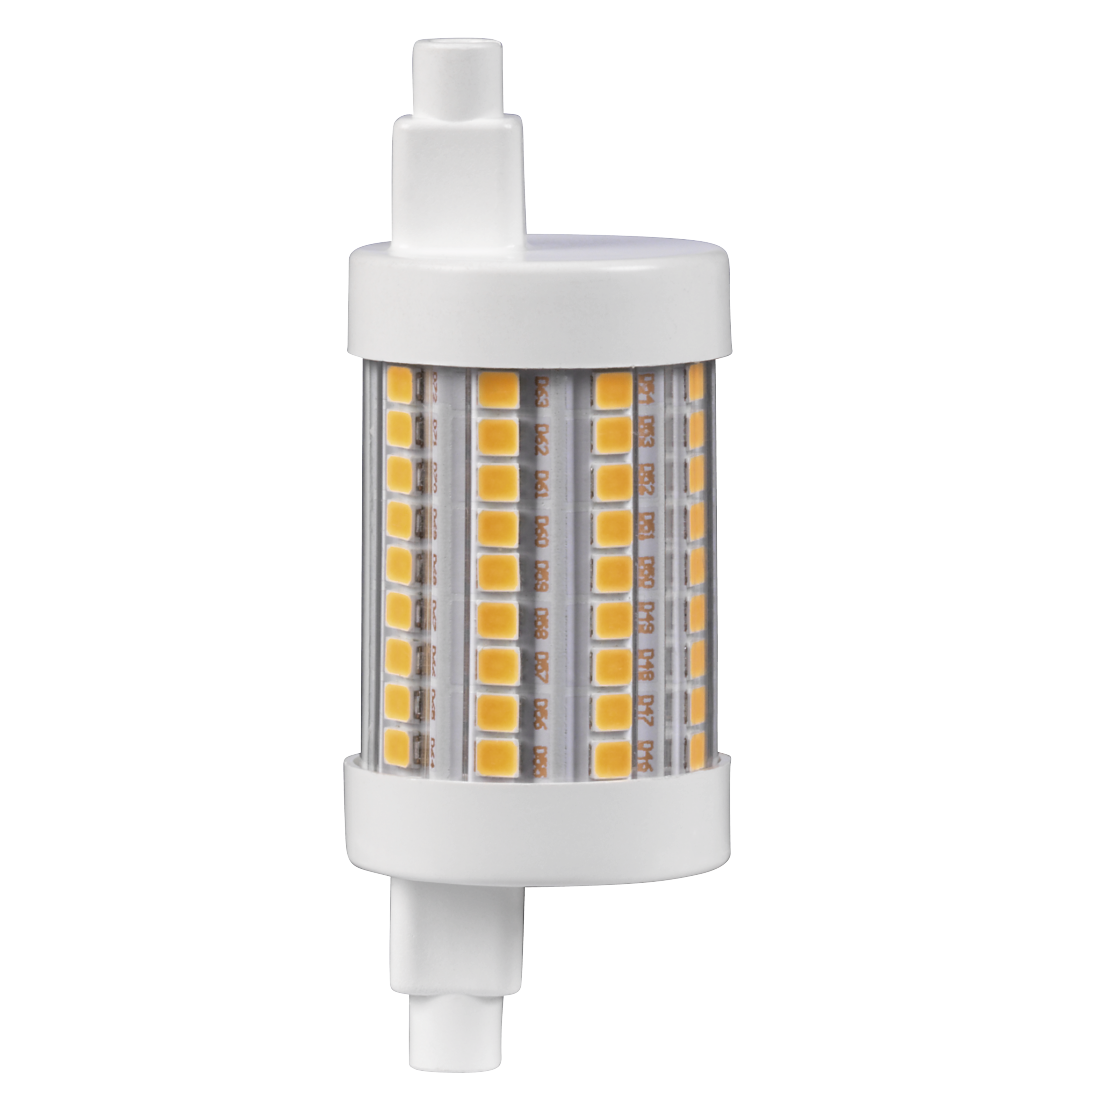 abx2 Druckfähige Abbildung 2 - Xavax, LED-Lampe, R7s, 1055lm ersetzt 75W, Stablampe, Warmweiß, dimmbar